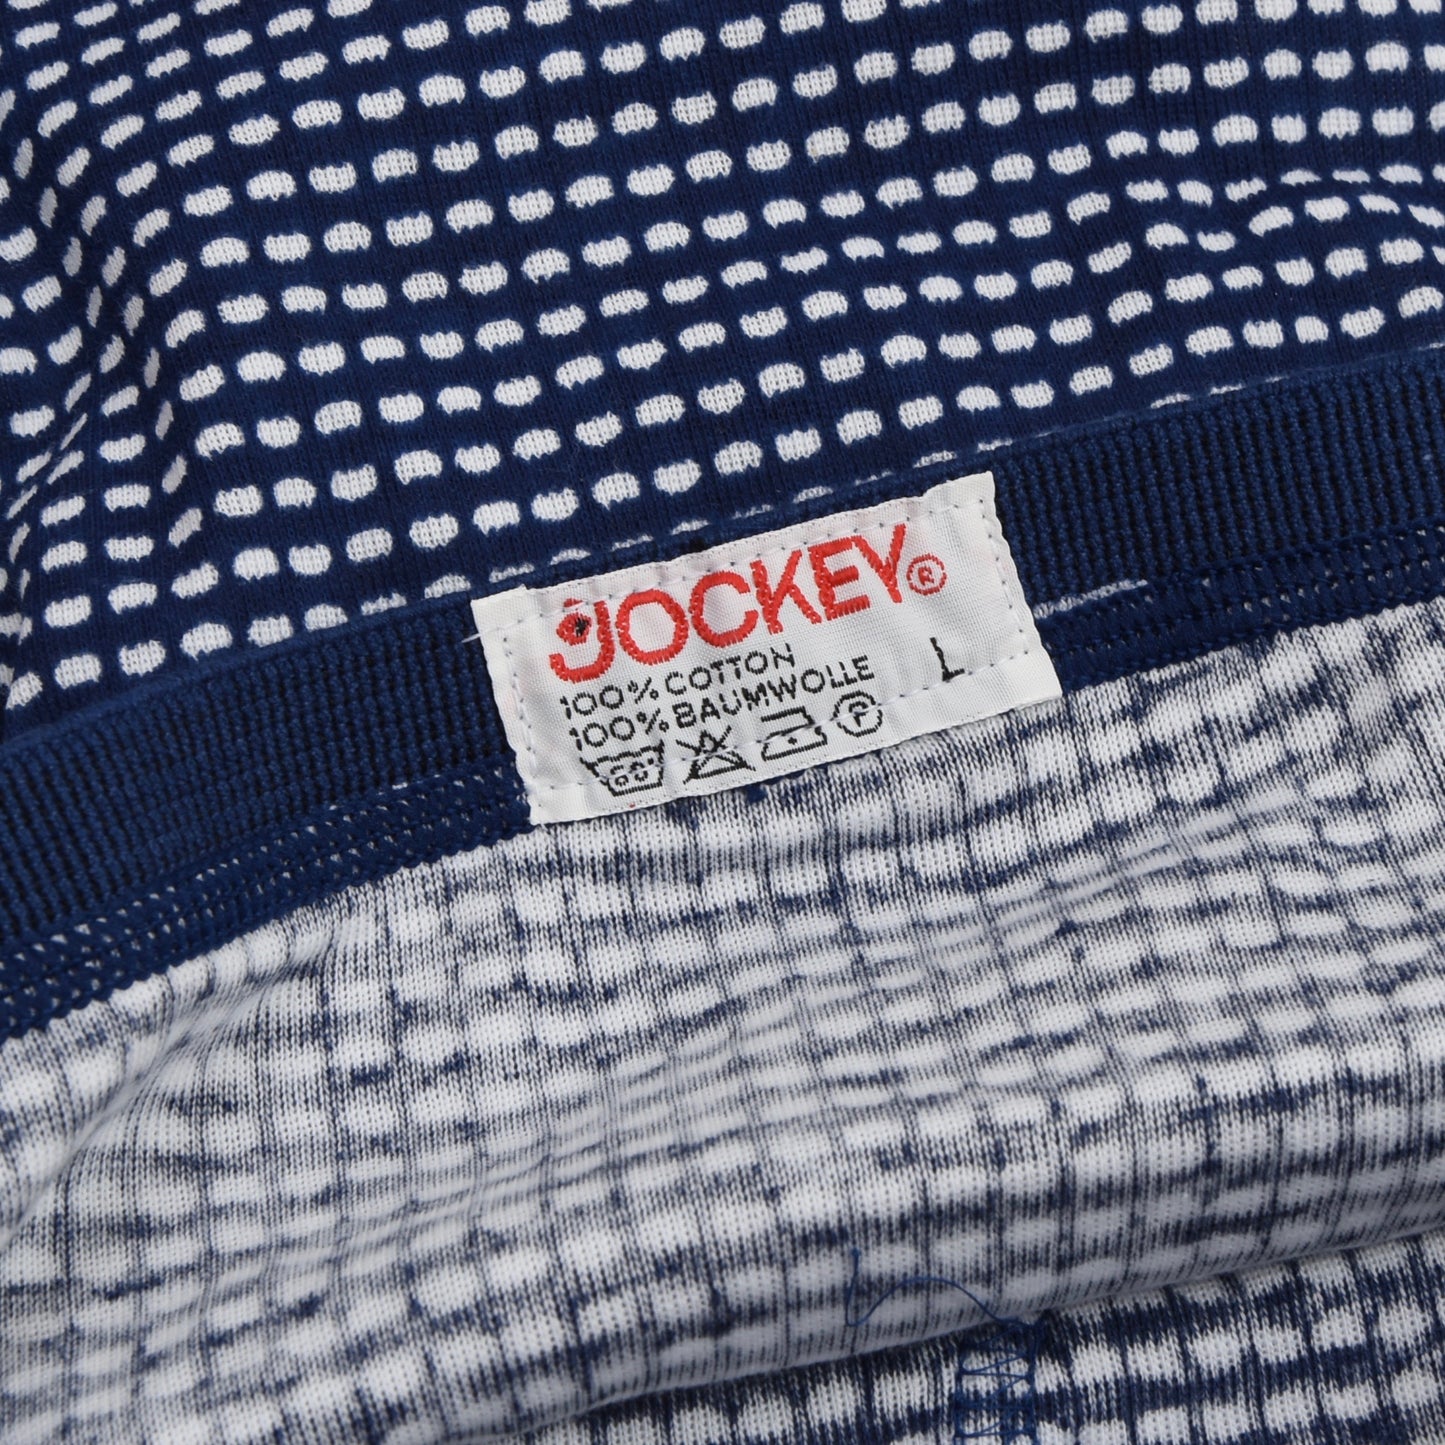 NOS Jockey Vintage Cotton Unterwäsche (Slips) Größe L